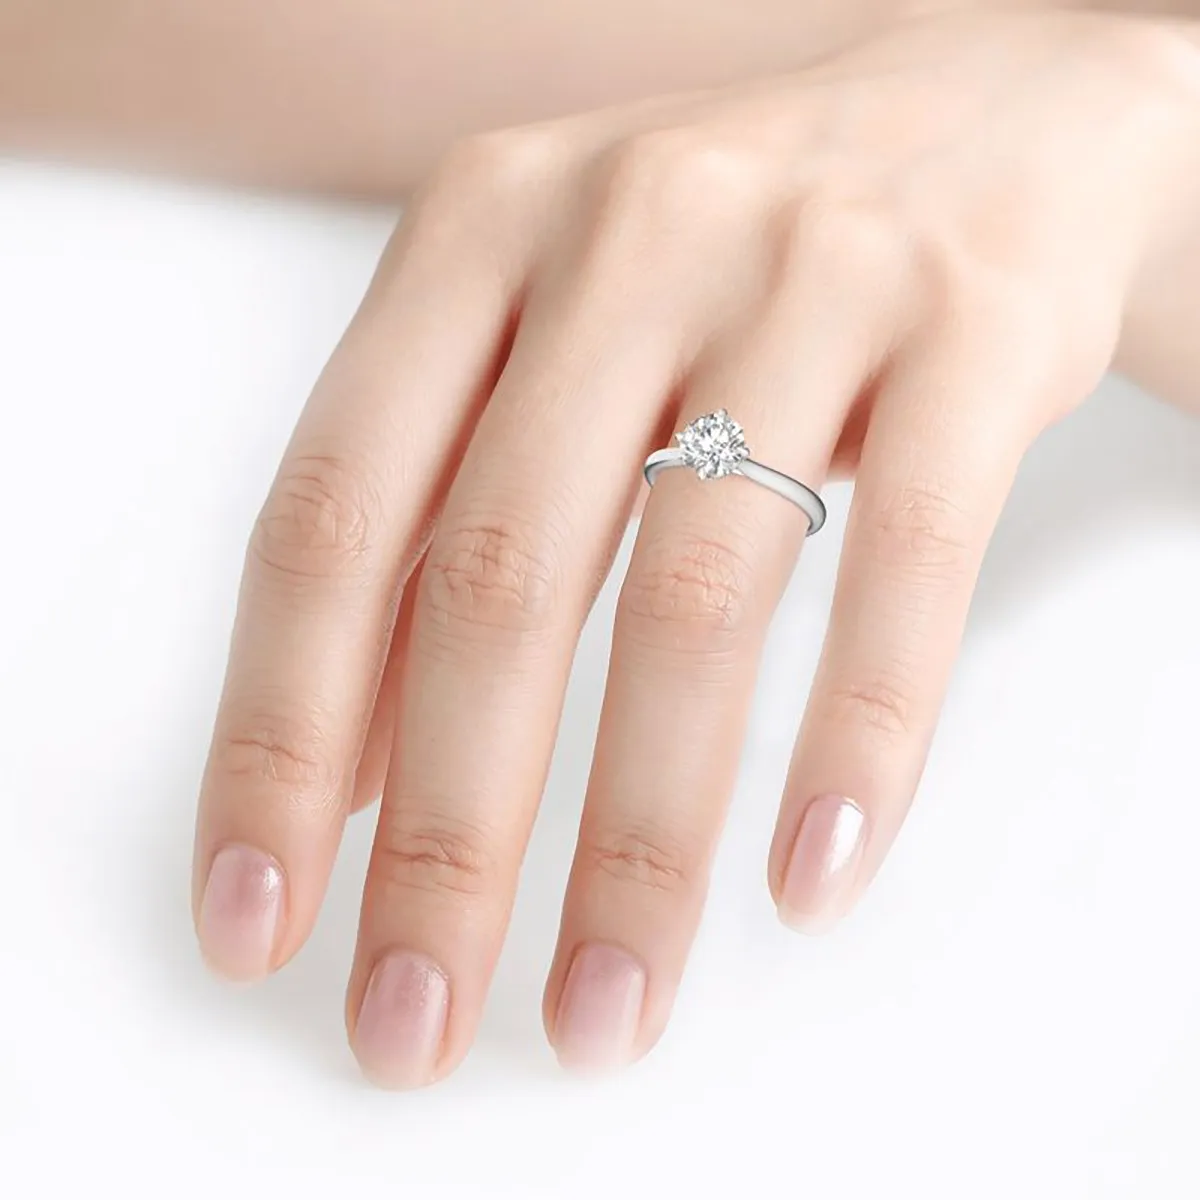 Муассанит женский 925 серебро оригинальный женский 1ct 6.5mm s D couleur VVS1 диамант обручальное кольцо